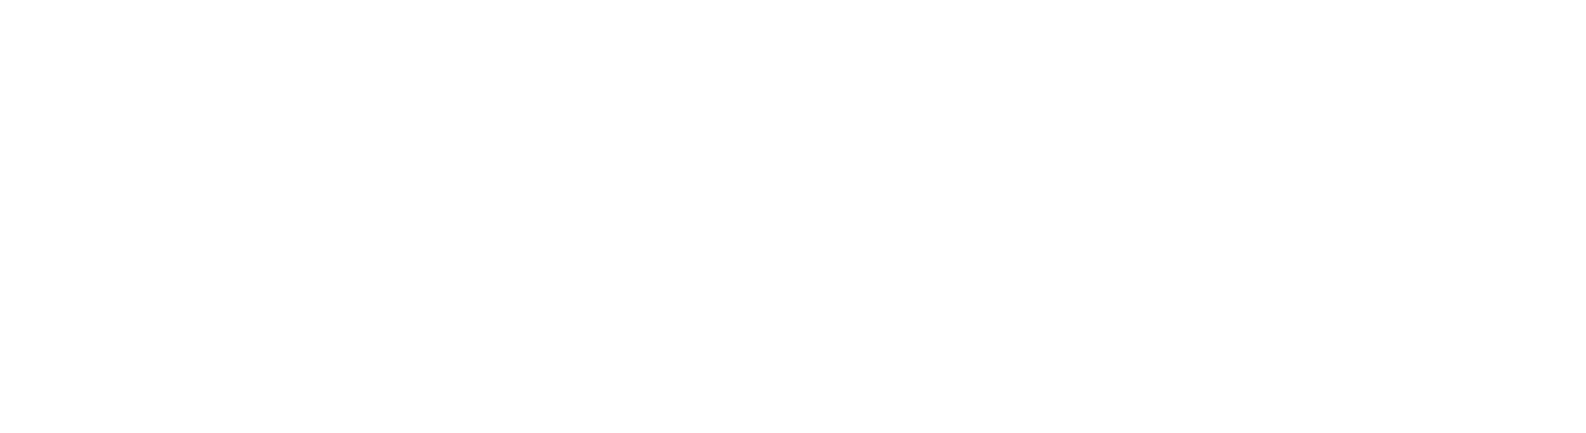 Eaton logo grand pour les fonds sombres (PNG transparent)